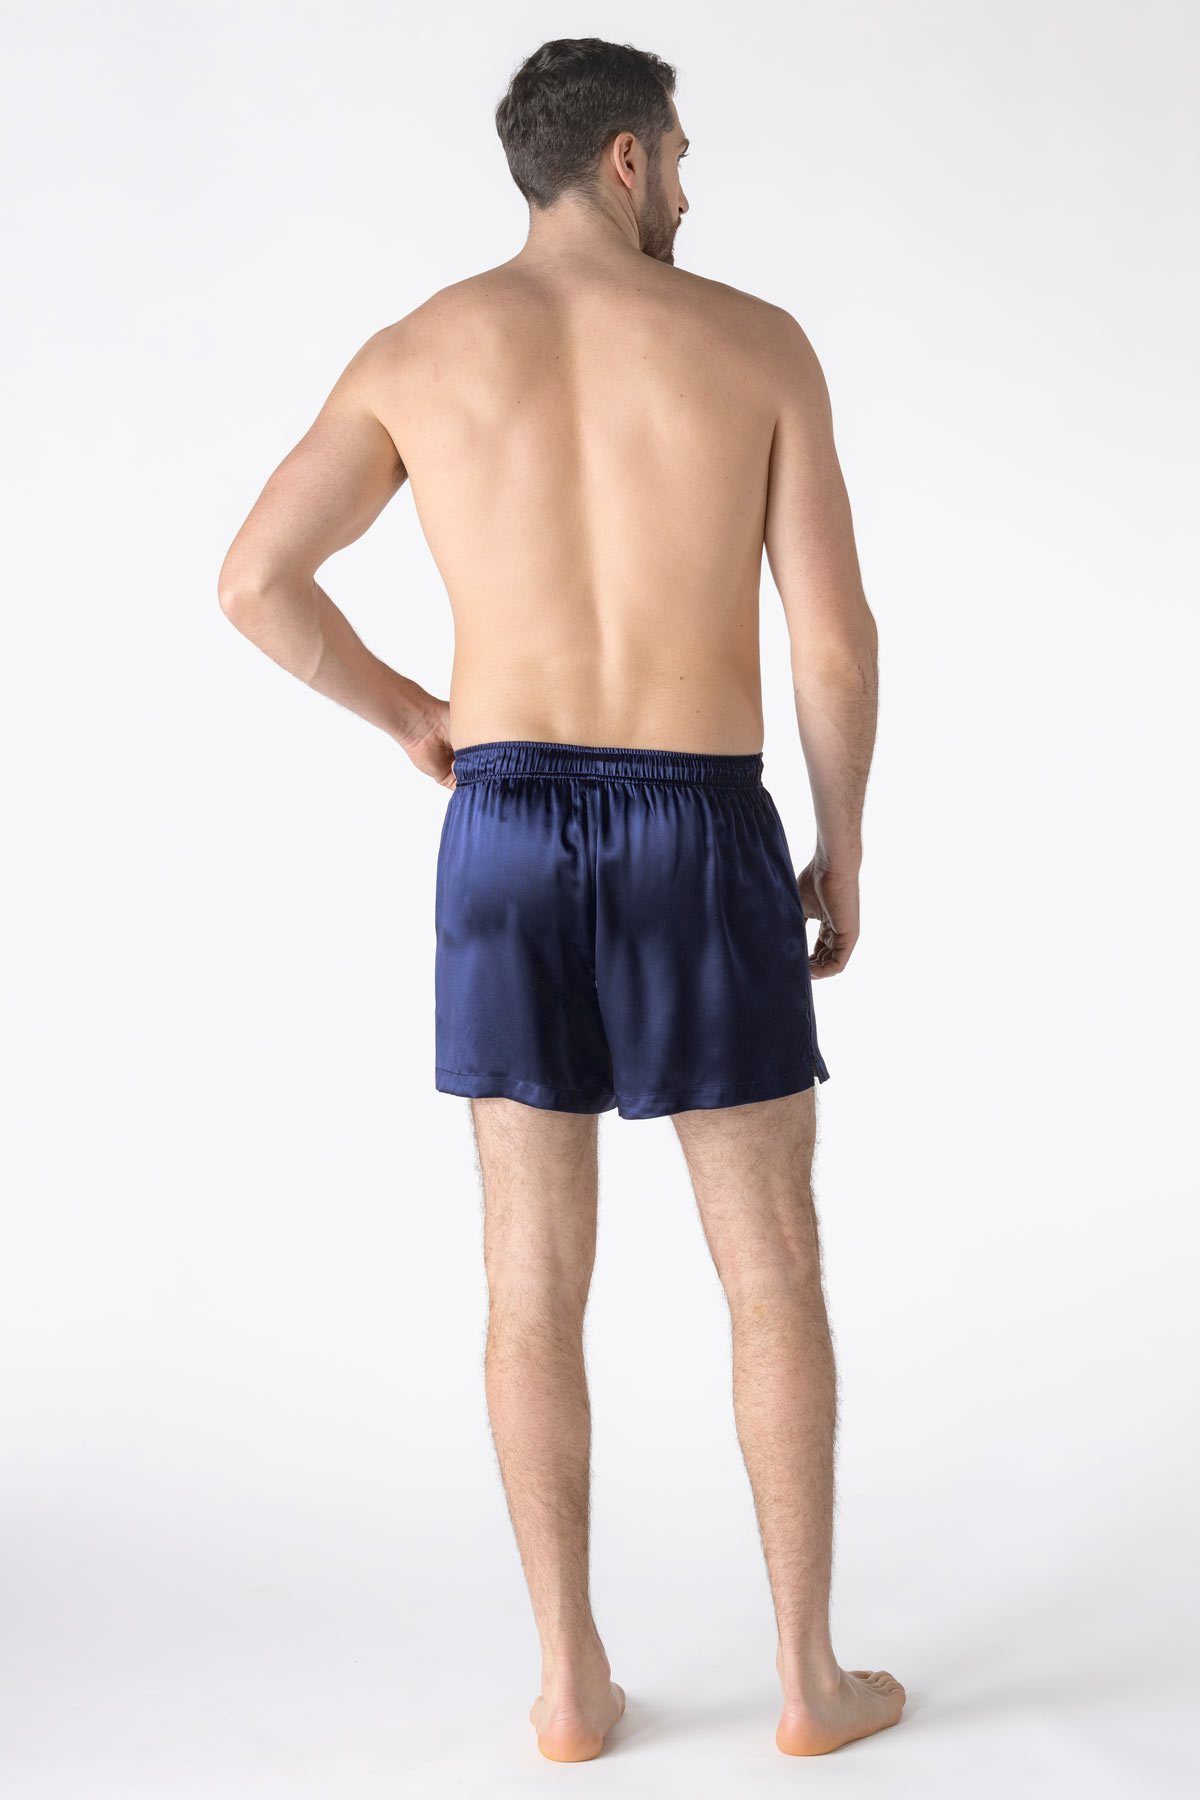 Men's Satin Boxers Shorts Plus Size S - 4XL Underwear